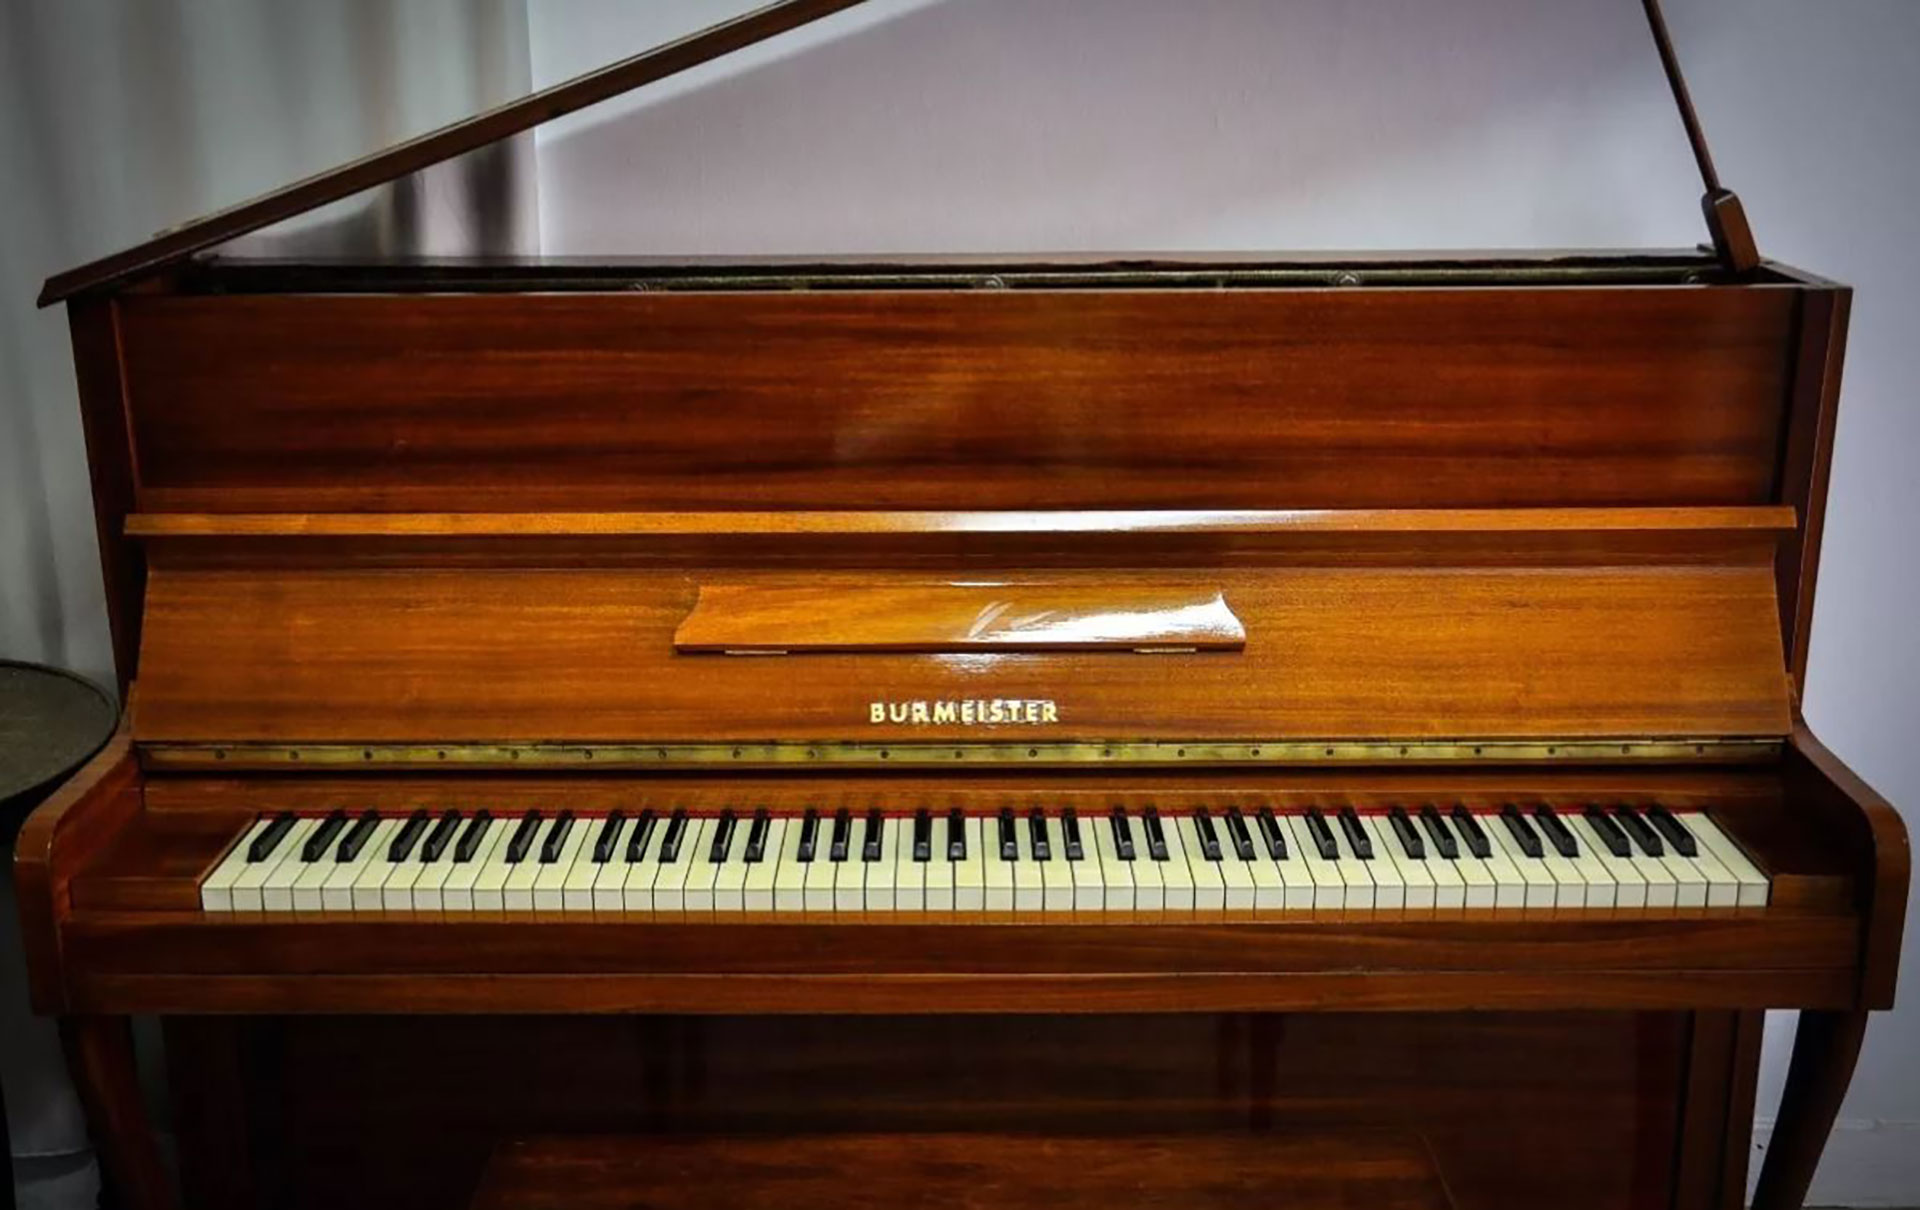 Un piano Burmeister en buen estado puede cotizar más de 600 mil pesos